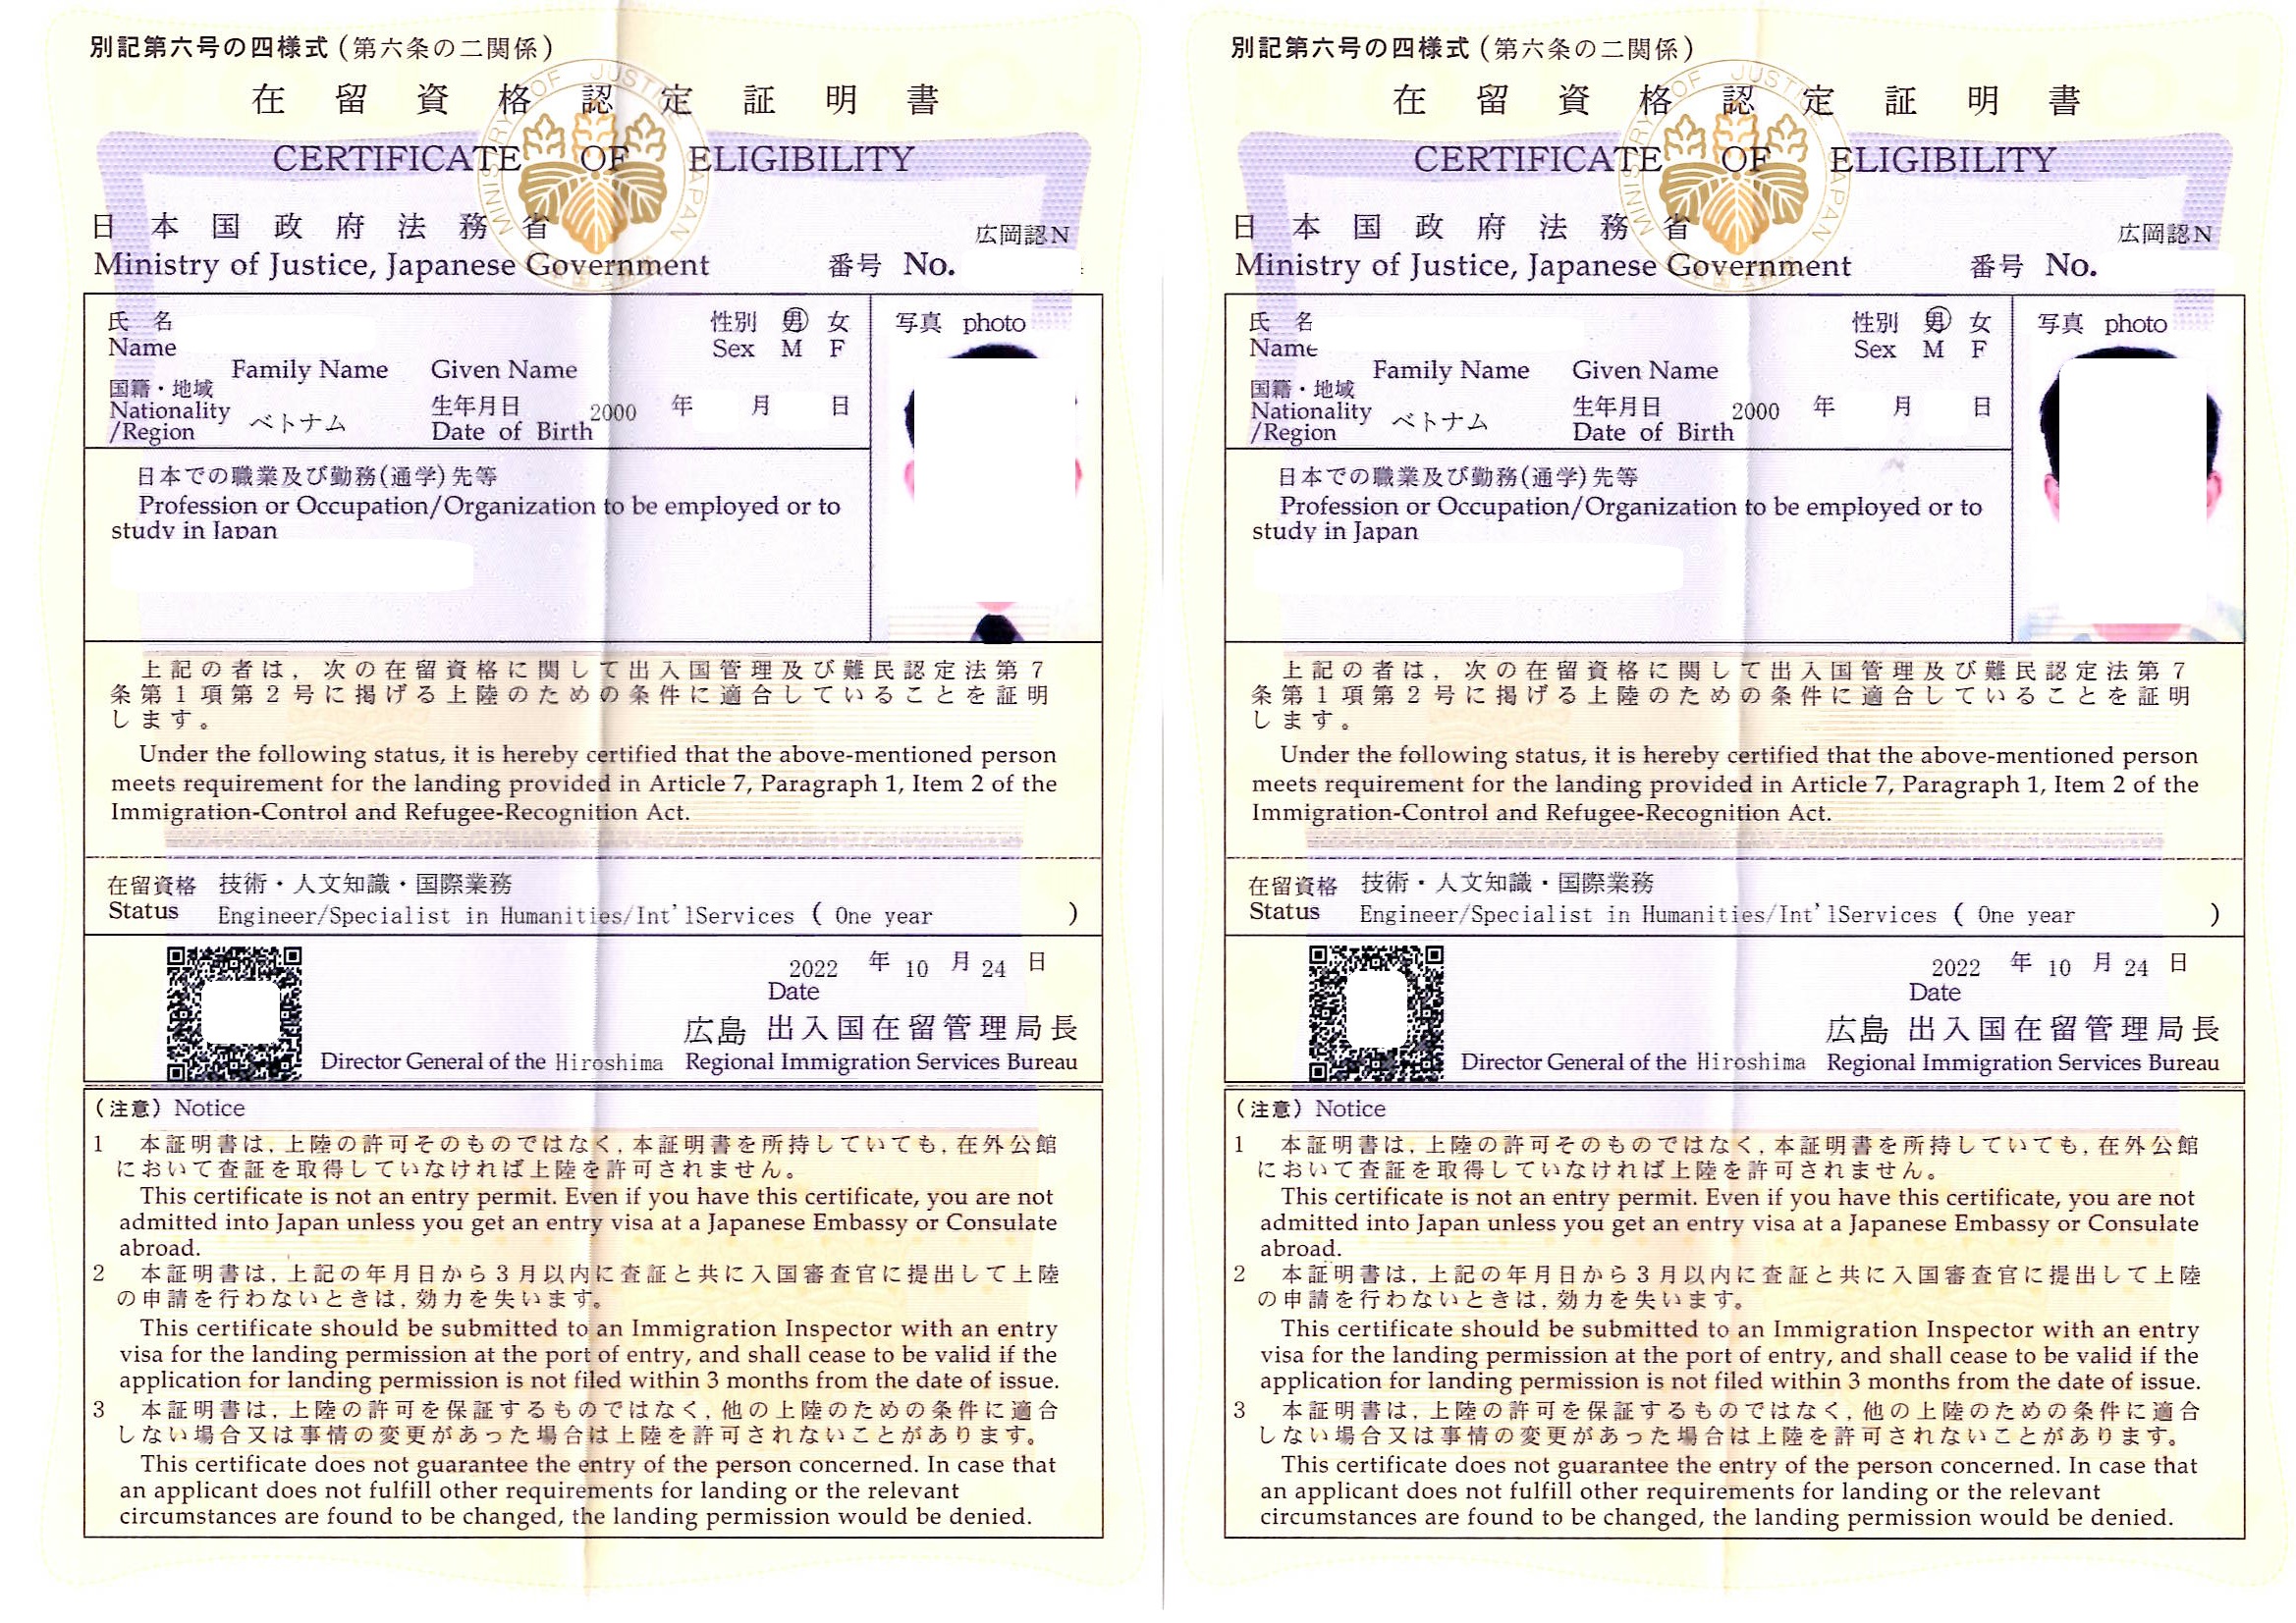 ベトナム人「技術・人文知識・国際業務」の在留資格認定証明書3名分を取得